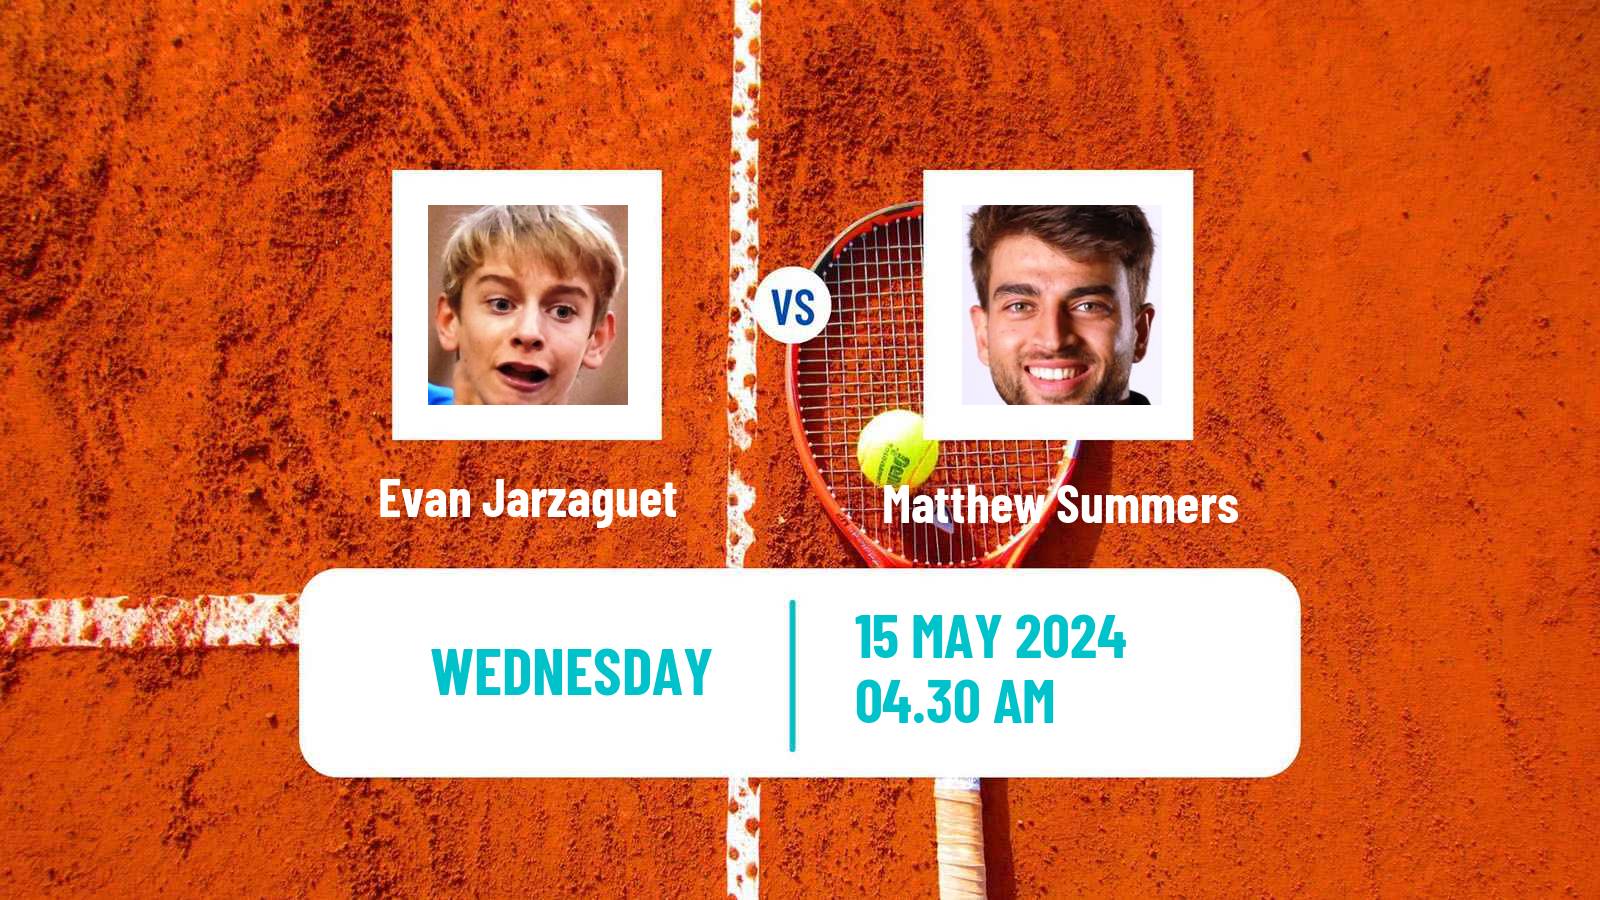 Tennis ITF M15 Monastir 20 Men Evan Jarzaguet - Matthew Summers